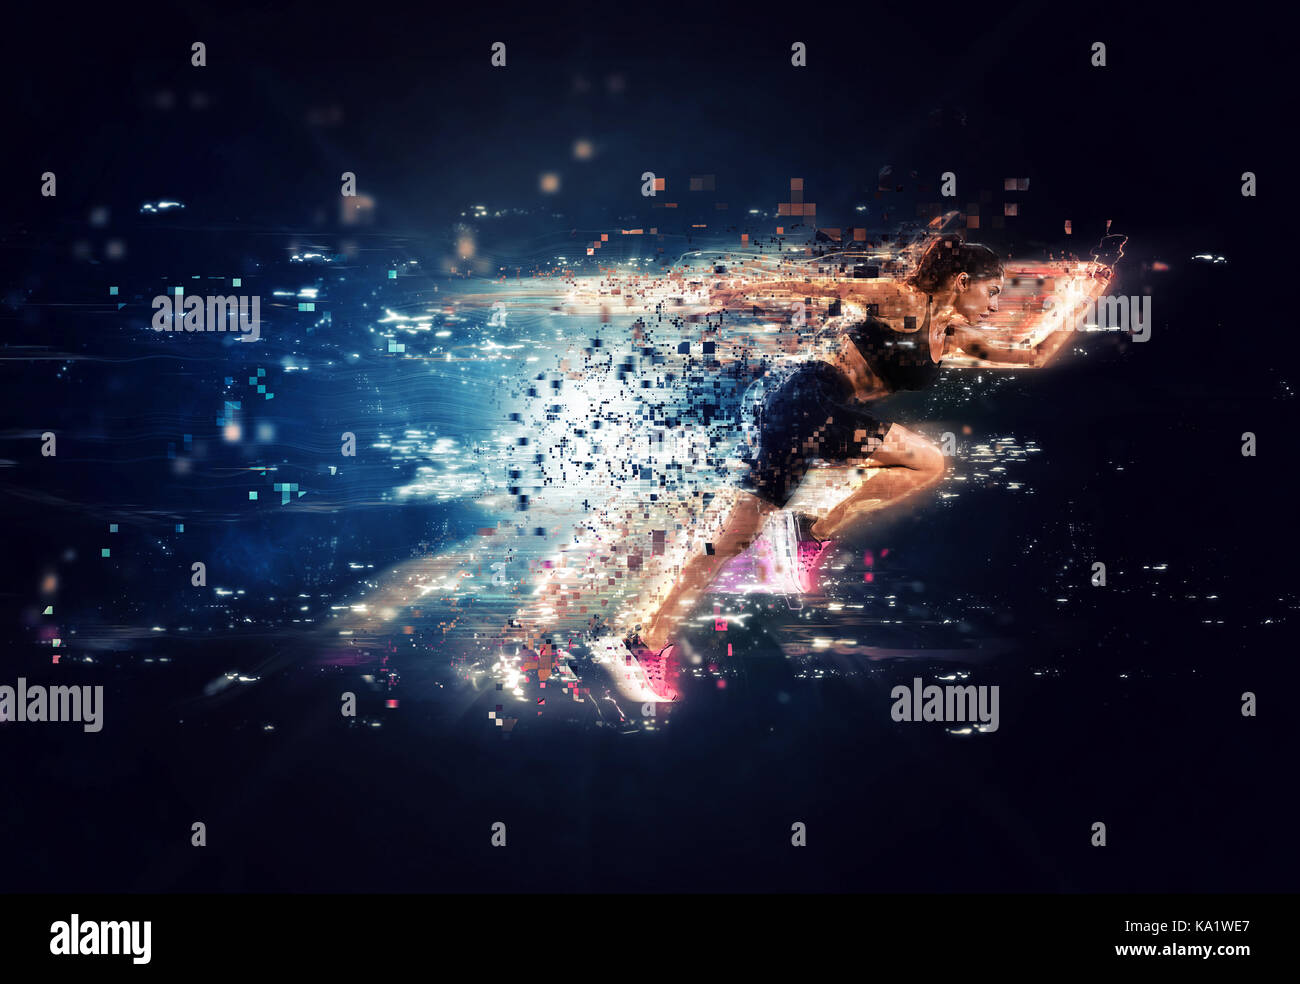 Athletische Frau schnelle Läufer mit futuristischen Effekten Stockfoto